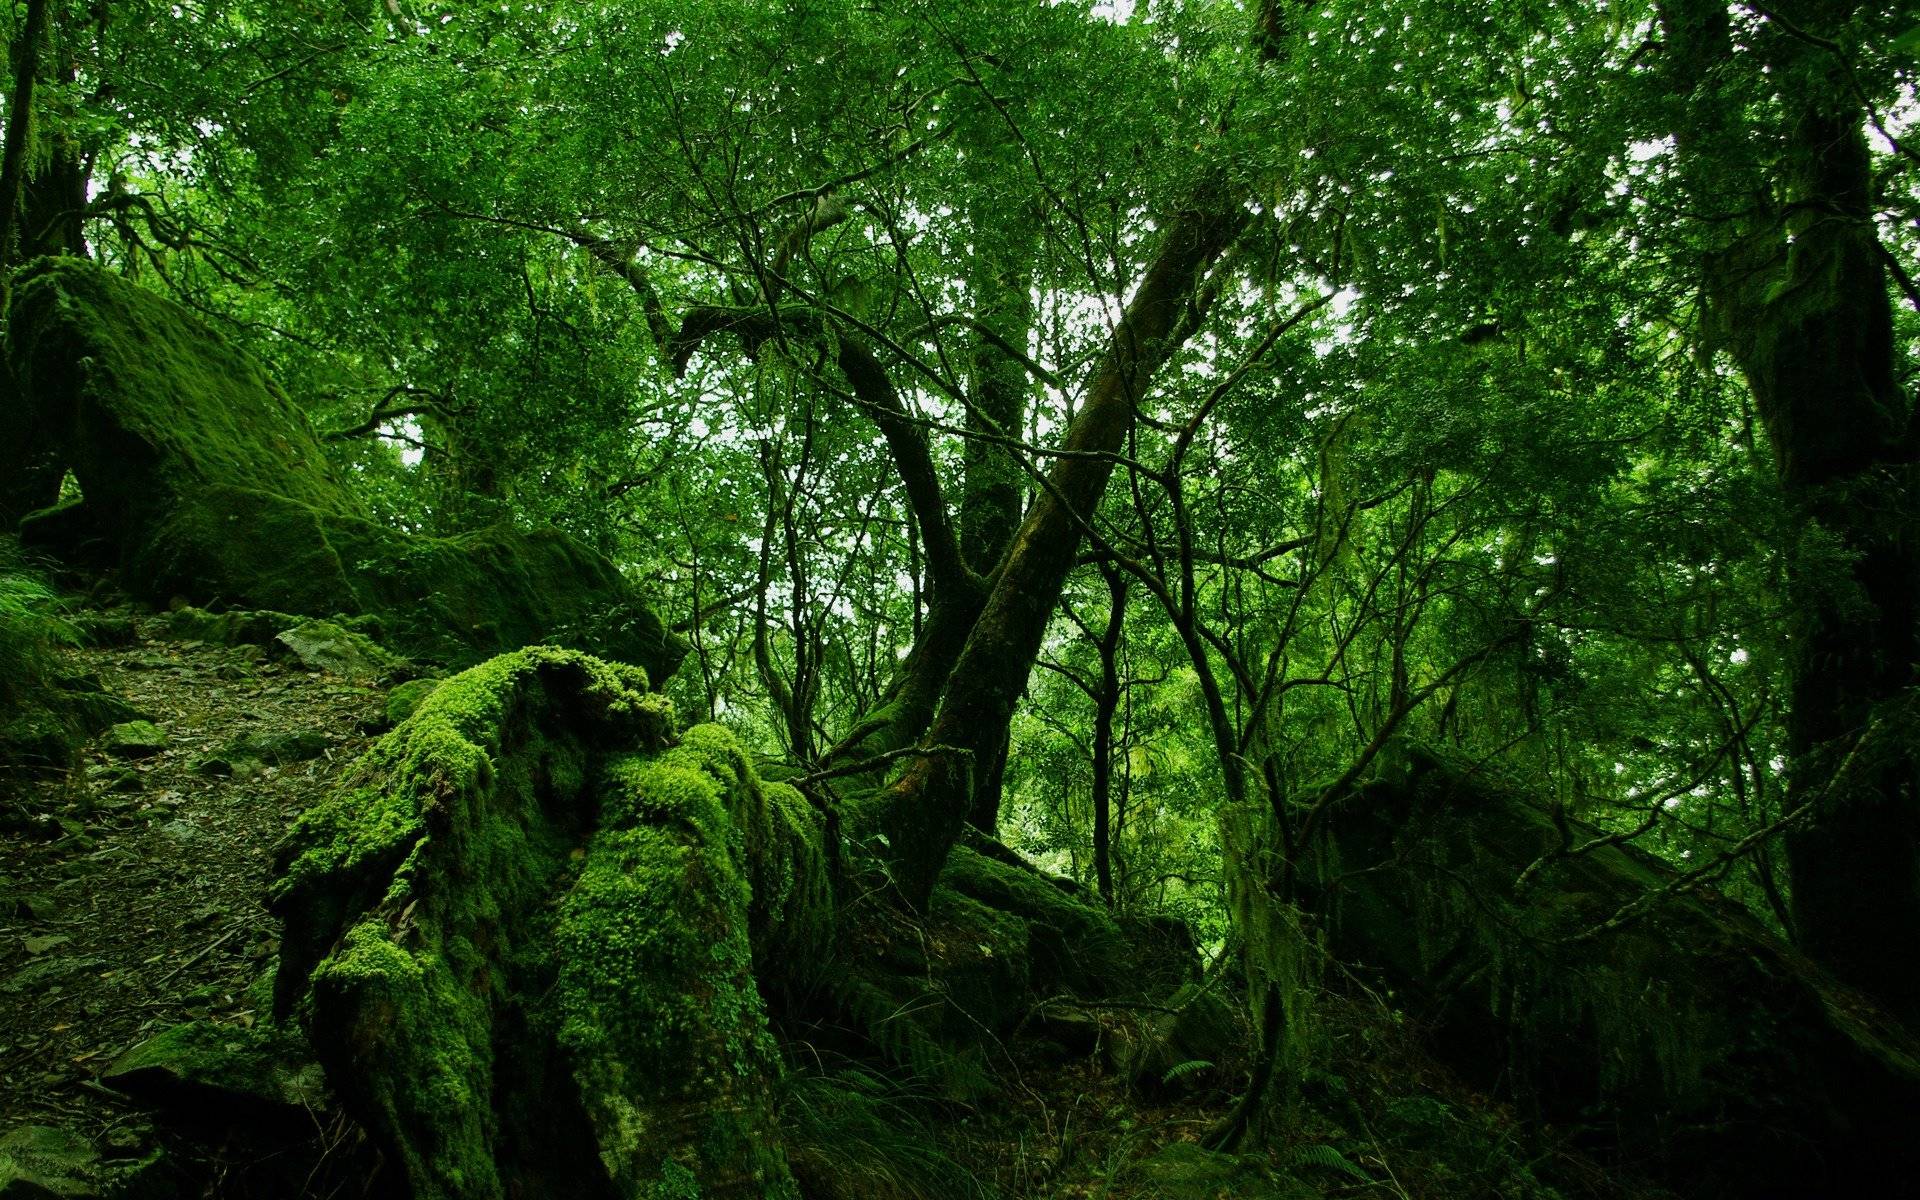 V.633 Rainforest Wallpaper Image